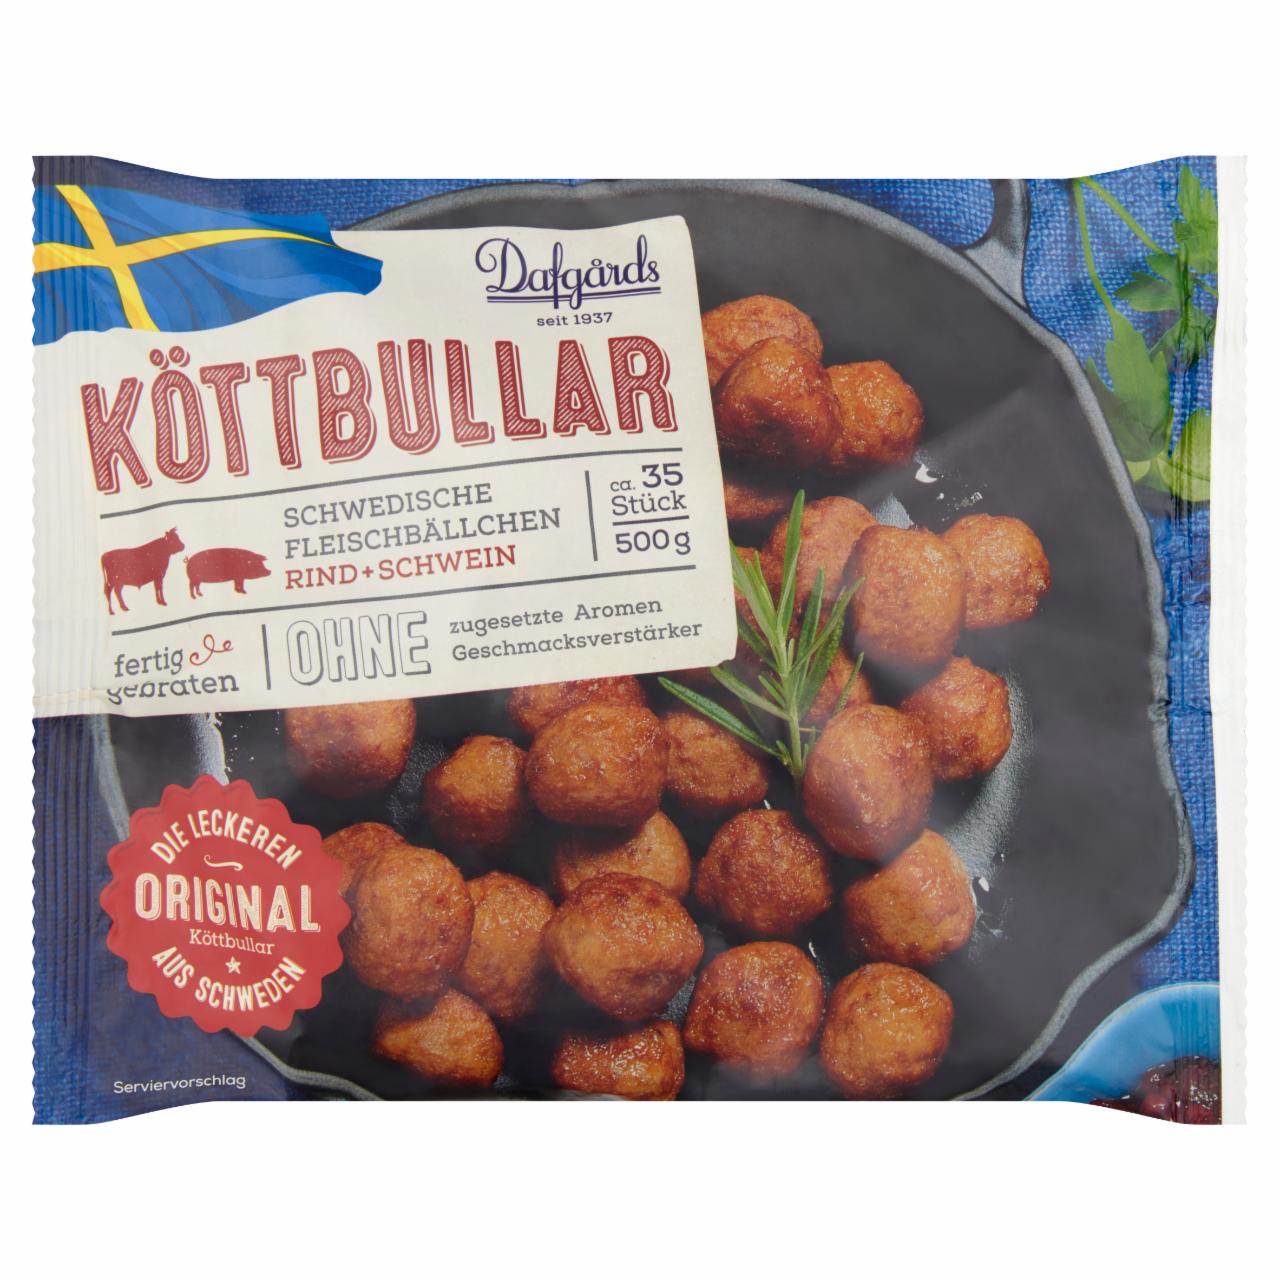 Képek - Dafgårds svéd húsgolyó marha és sertéshúsból 14 db 500 g